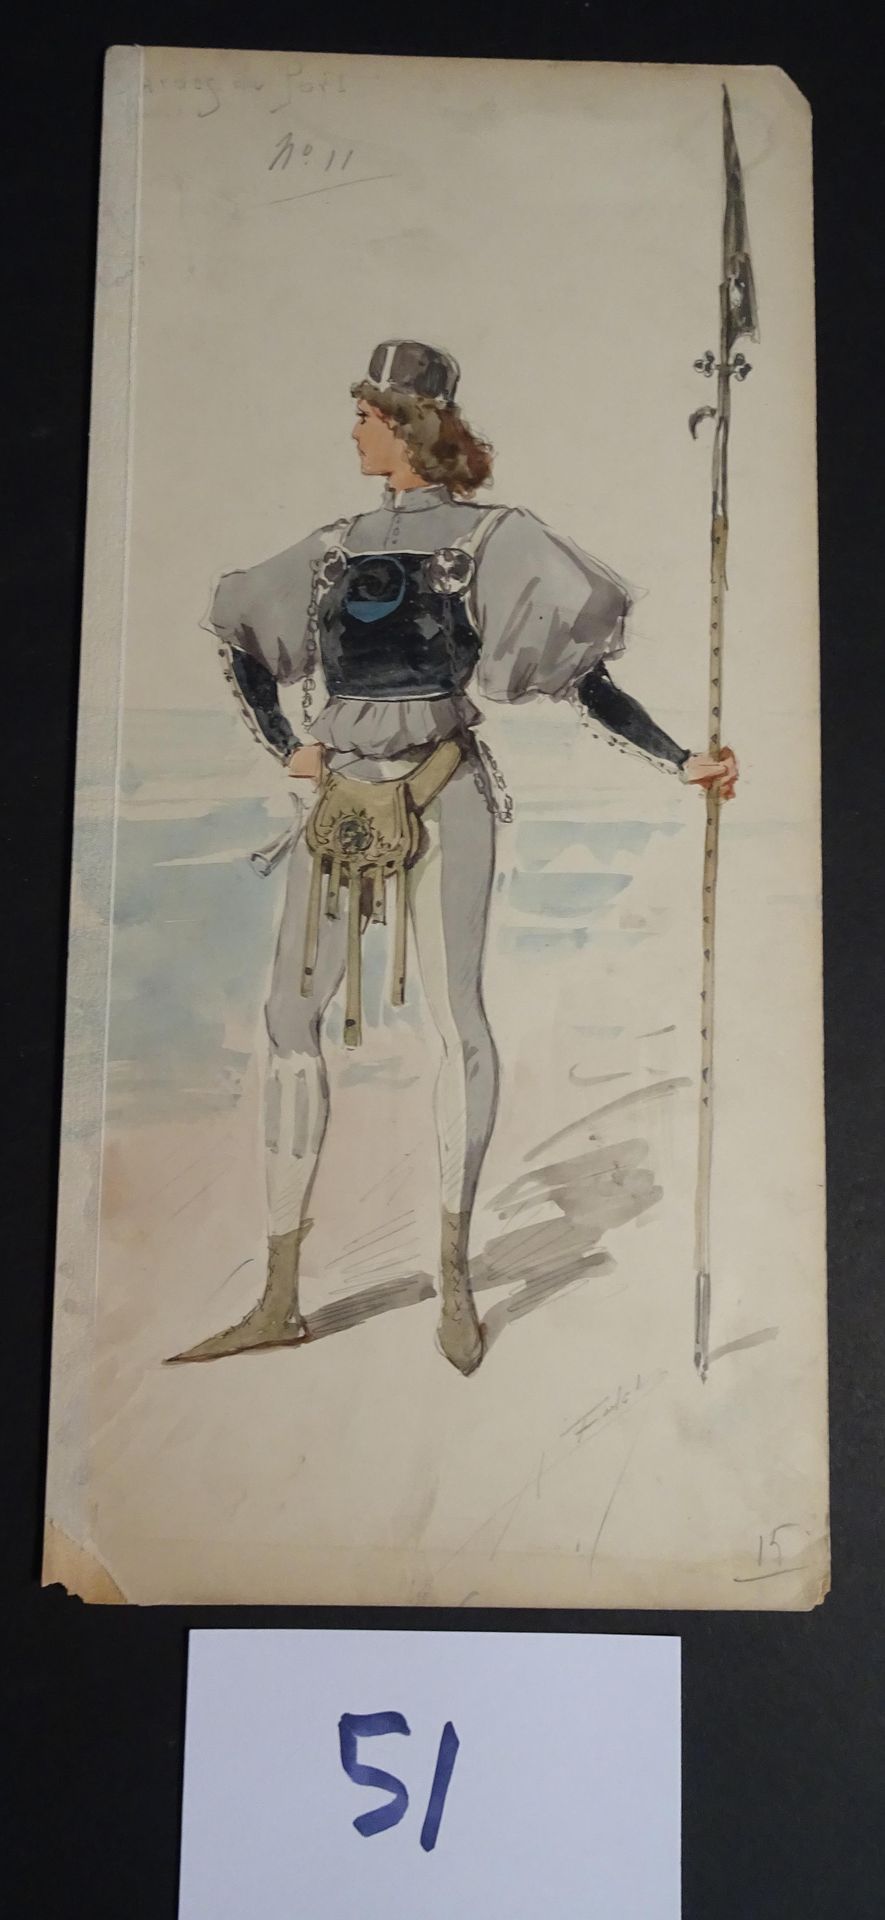 EDEL EDEL ALFREDO ( 1859-1912)

"Guardie al forte. Guazzo, acquerello e inchiost&hellip;